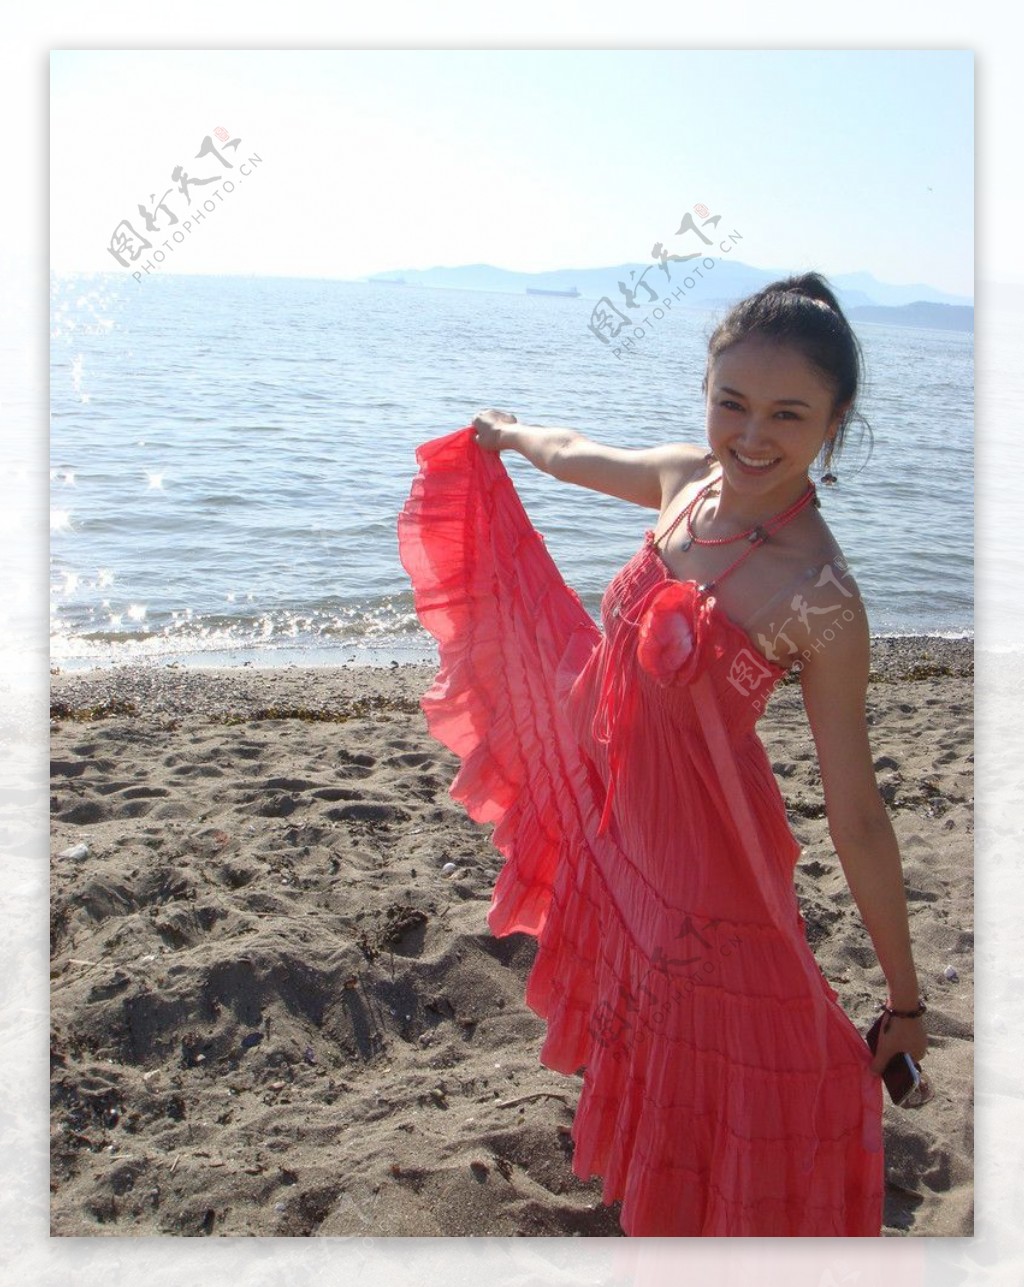 孙熙海边沙滩红色吊带连衣裙生活写真图片